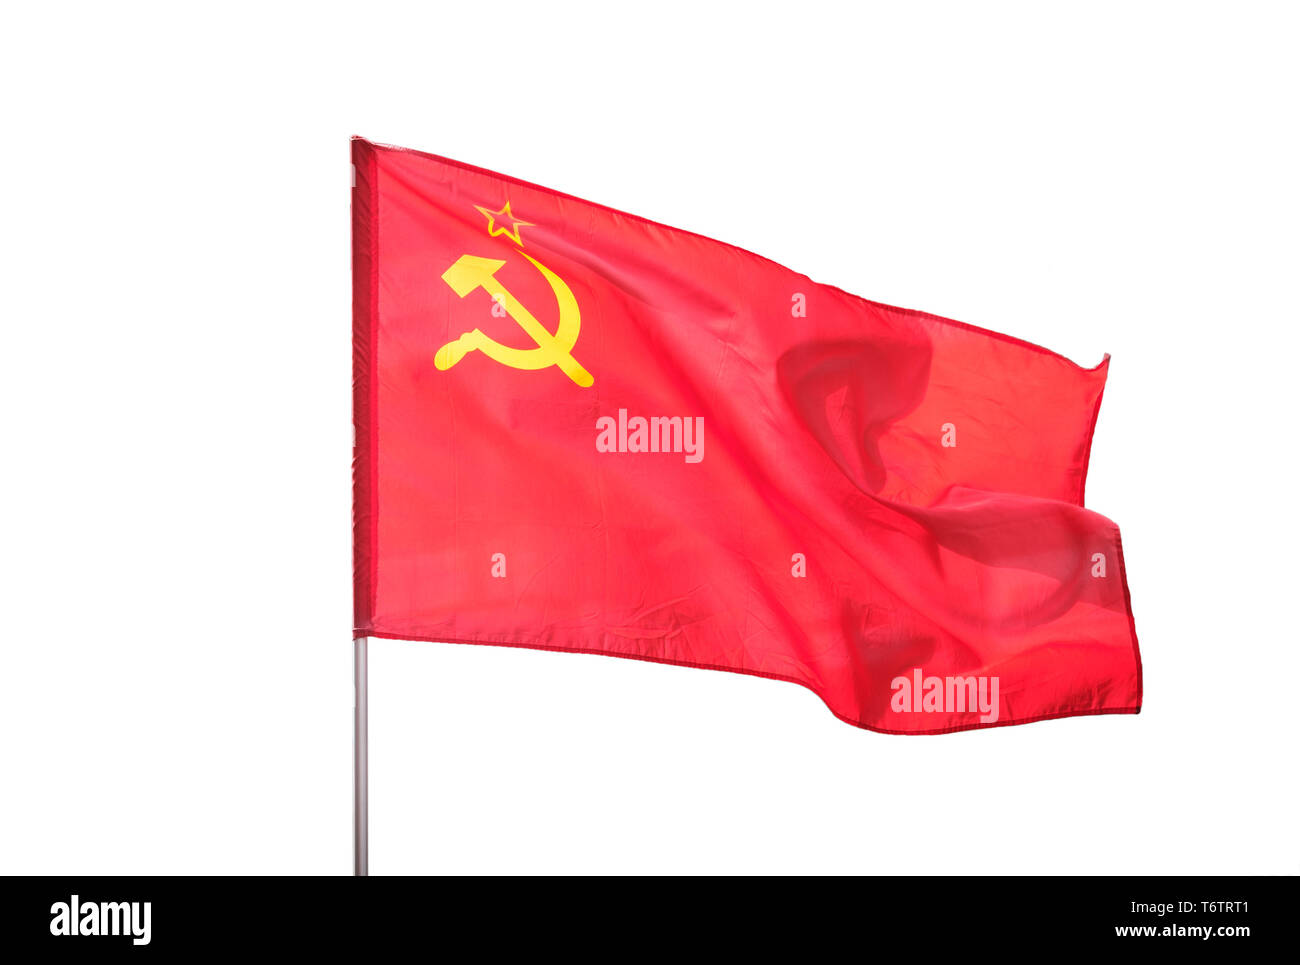 Unione Sovietica, Urss bandiera isolati su sfondo bianco Foto Stock